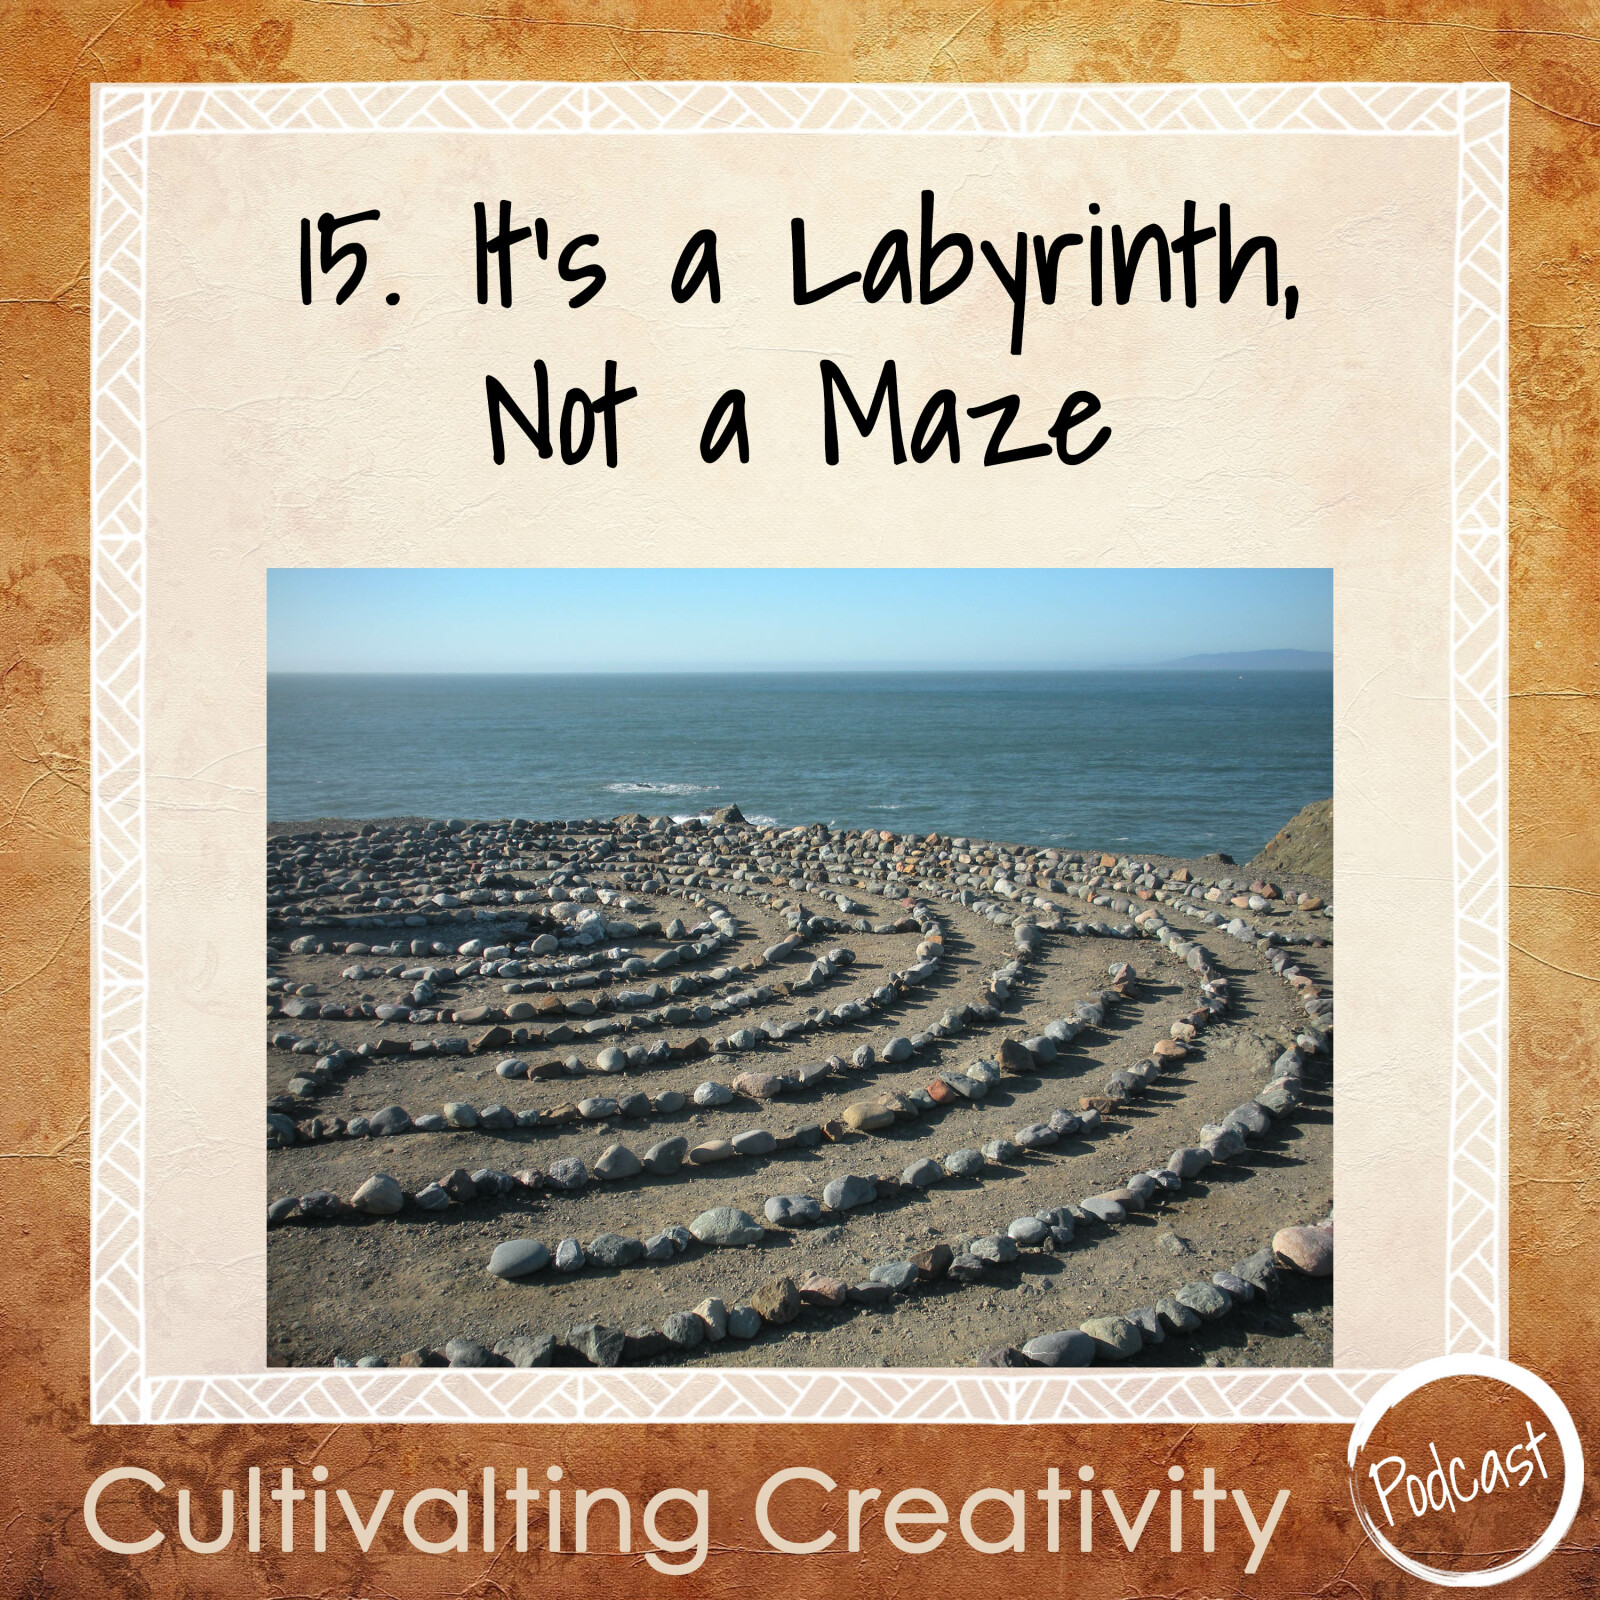 15. It's a Labyrinth, Not a Maze